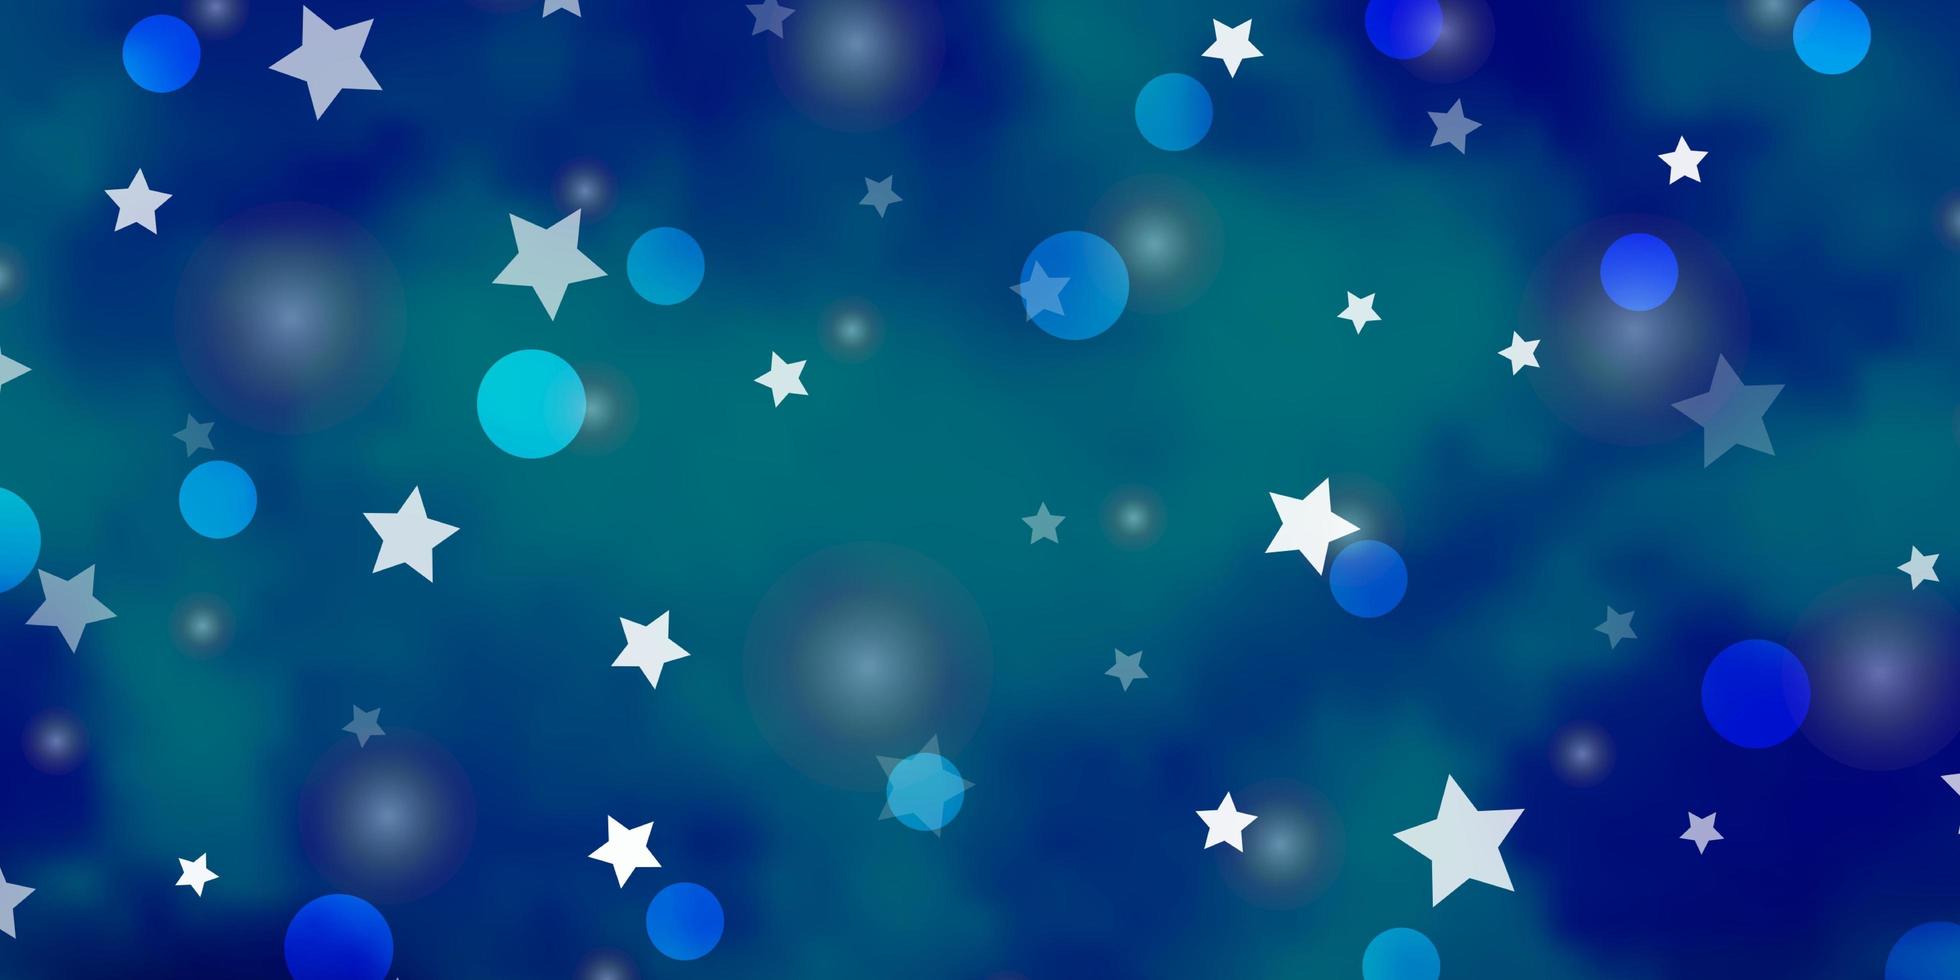 hellblaues Vektorlayout mit Kreisen, Sternen. abstrakte Illustration mit bunten Formen von Kreisen, Sternen. Design für Textilien, Stoffe, Tapeten. vektor